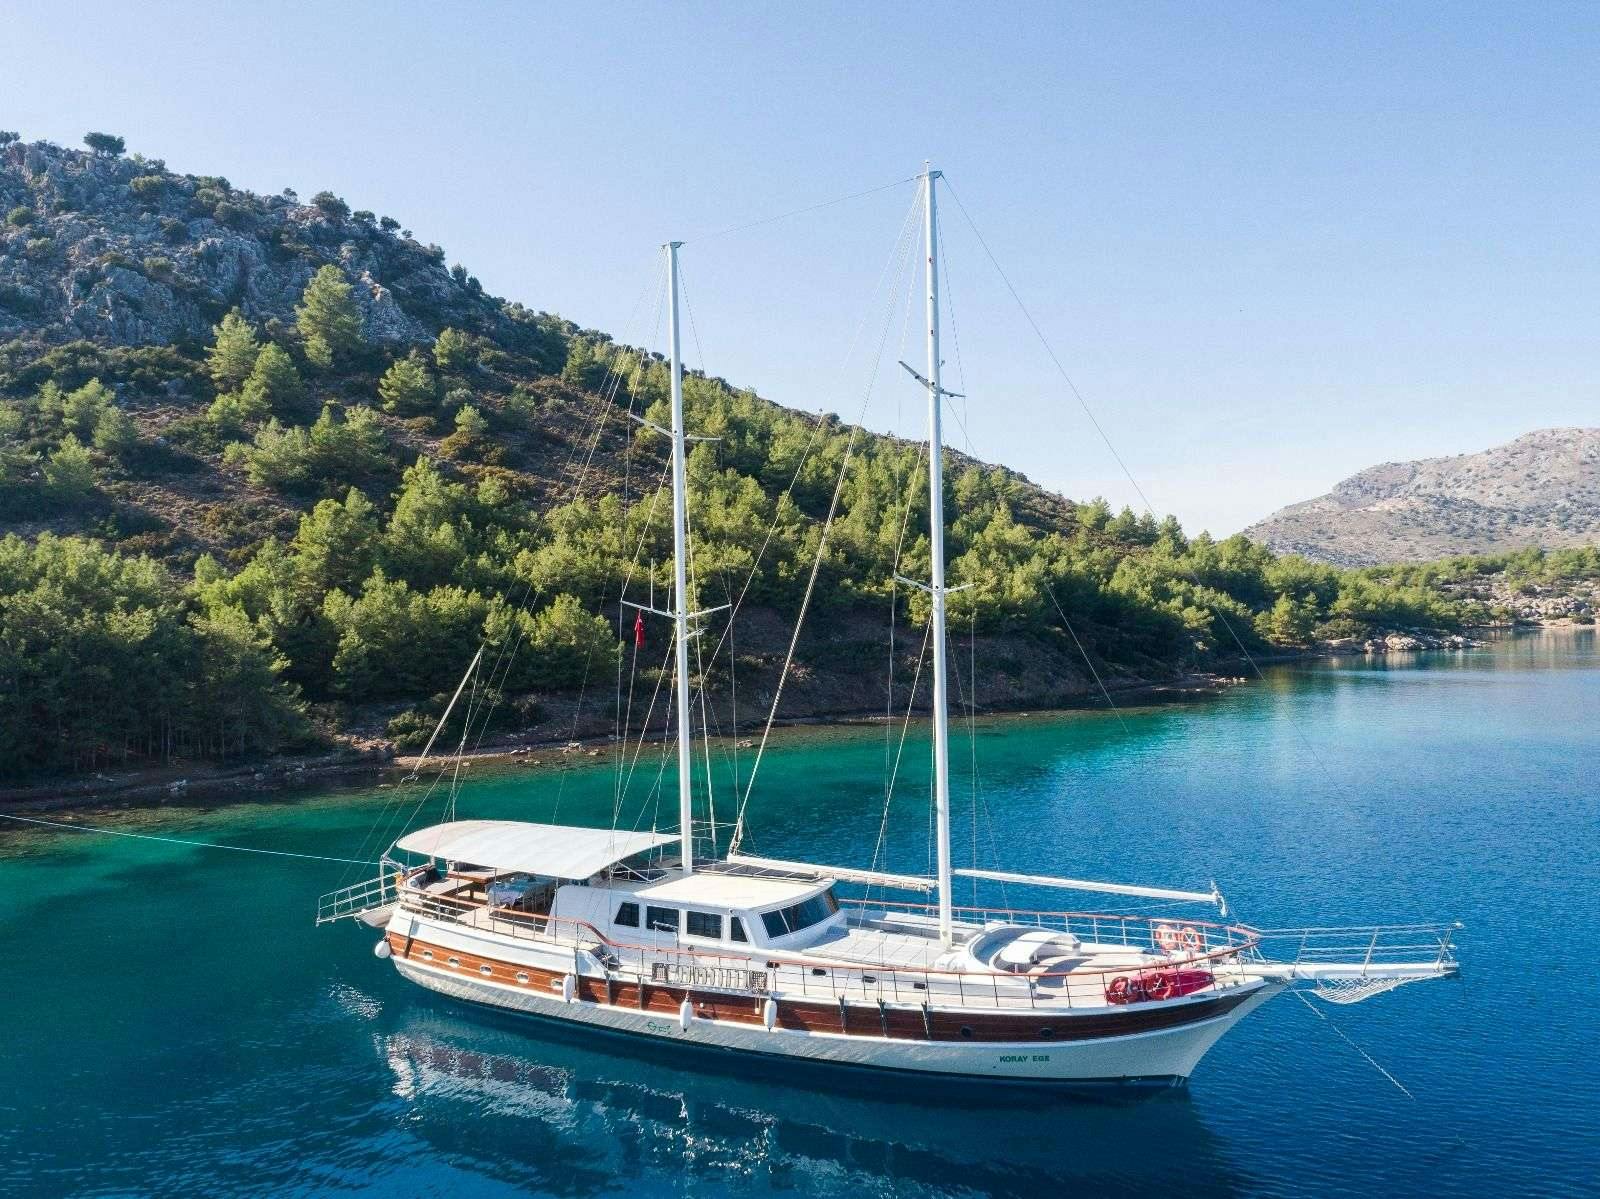 koray ege - Yacht Charter Turkey & Boat hire in Greece & Turkey 1